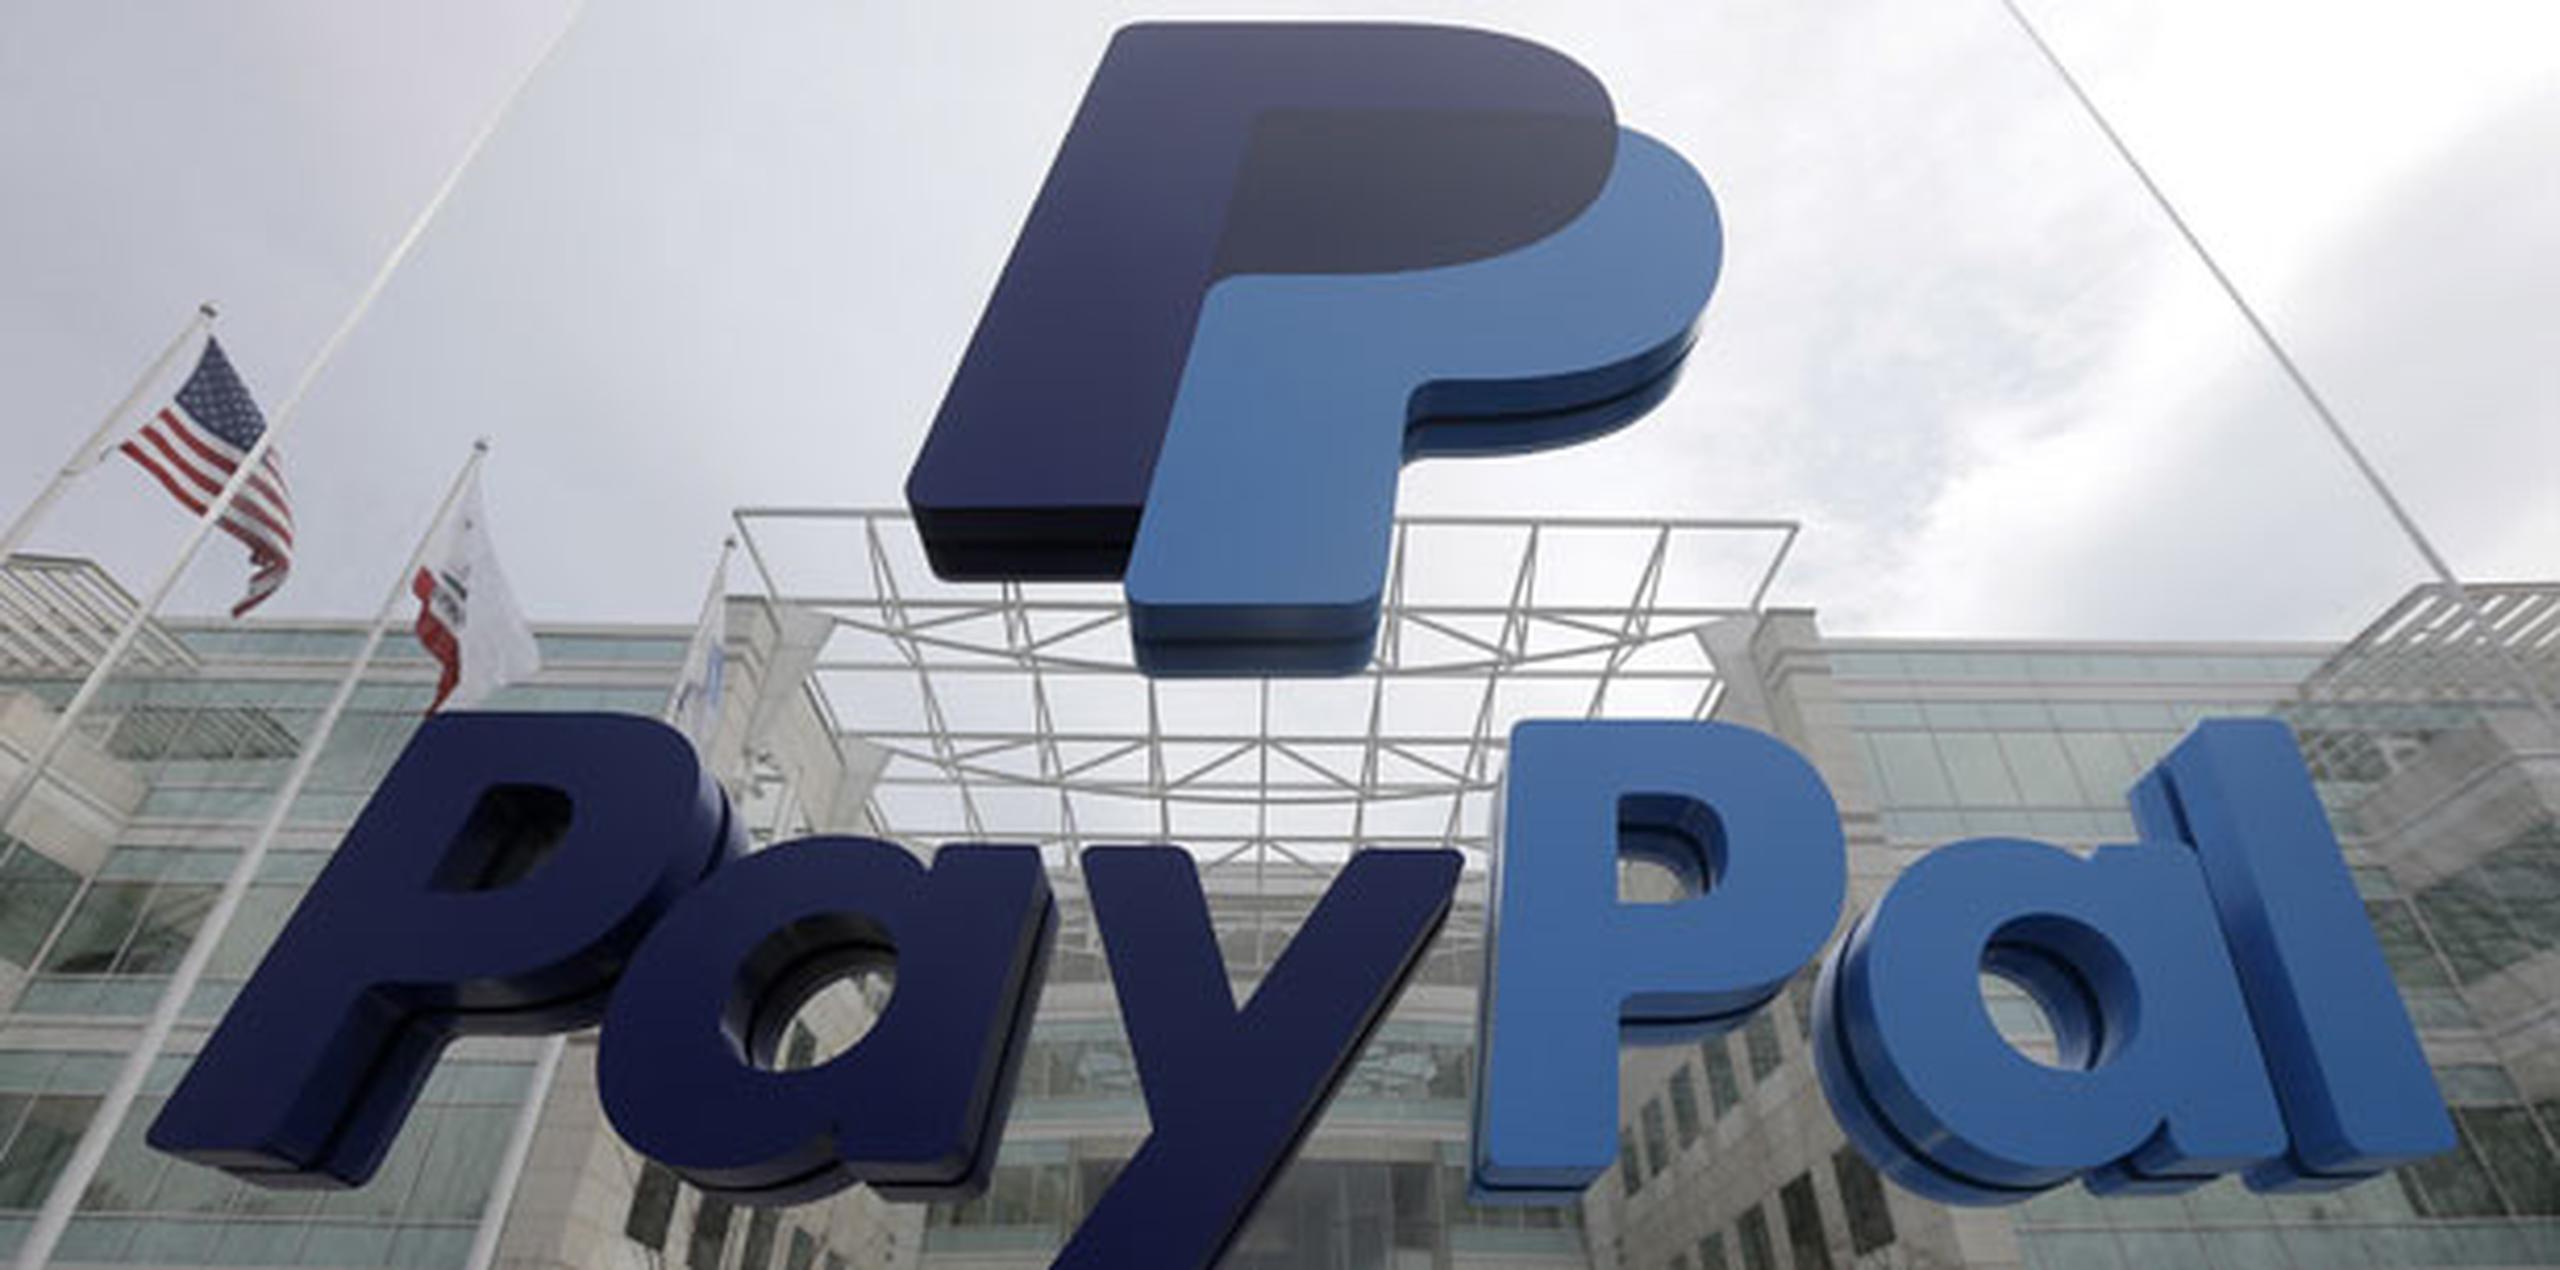 En el último año, muchas empresas y organizaciones han evitado hacer transacciones con Carolina del Norte debido a la ley, como la cancelación de una instalación de PayPal que hubiera añadido 2,660 millones de dólares al cofre estatal. (AP)